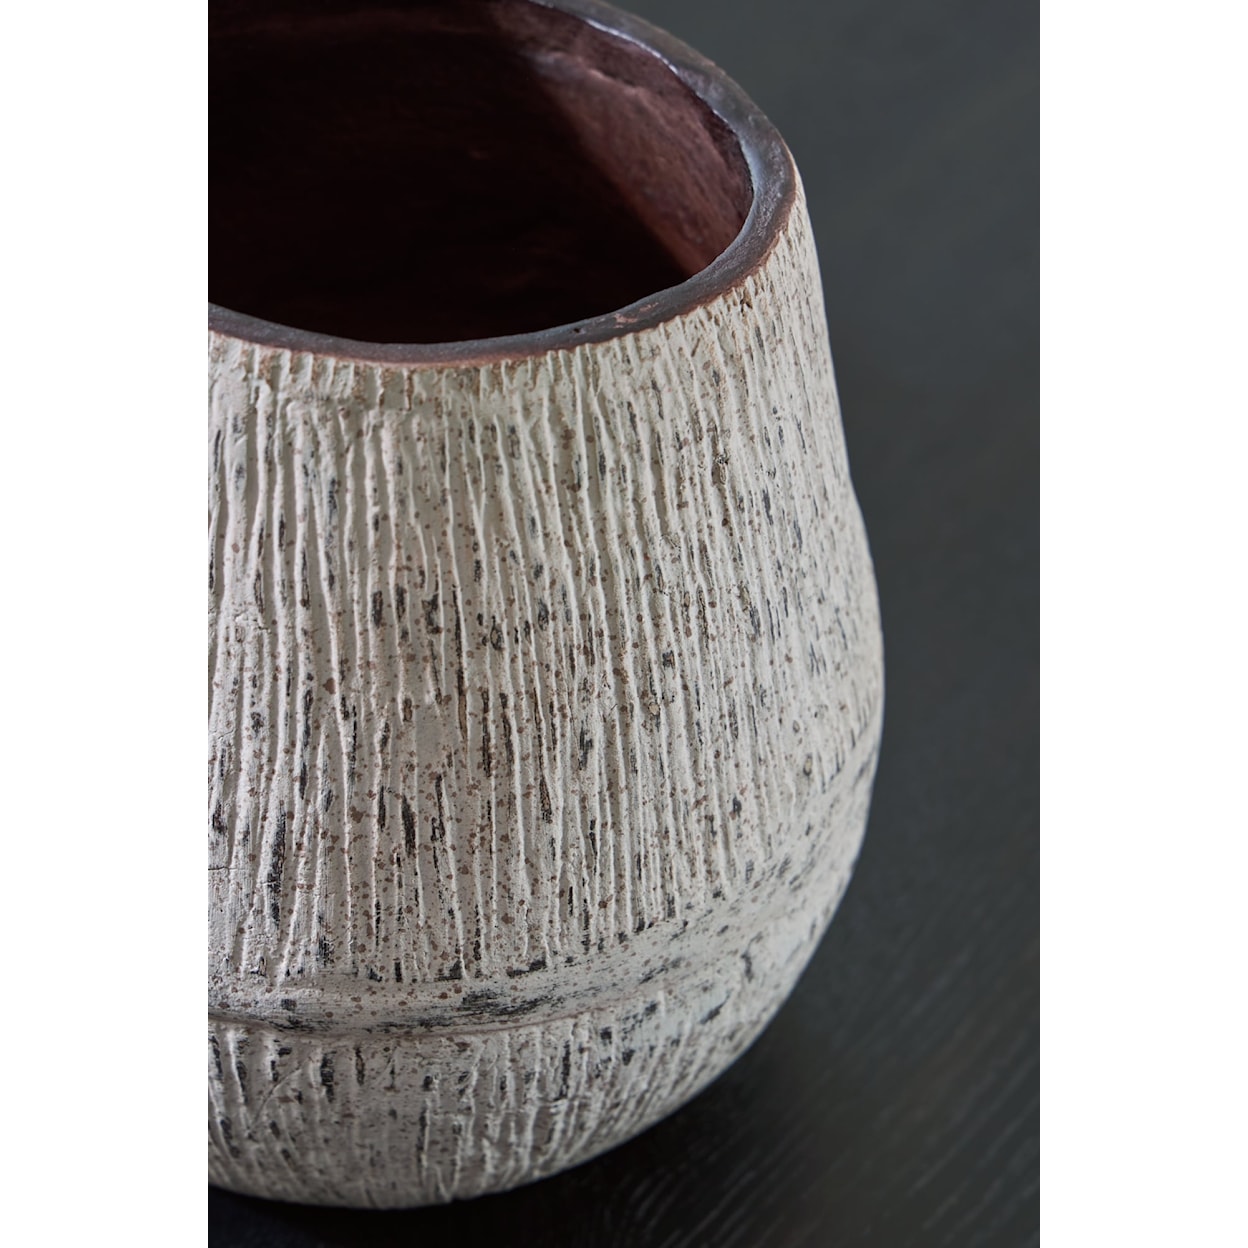 Signature Claymount Vase